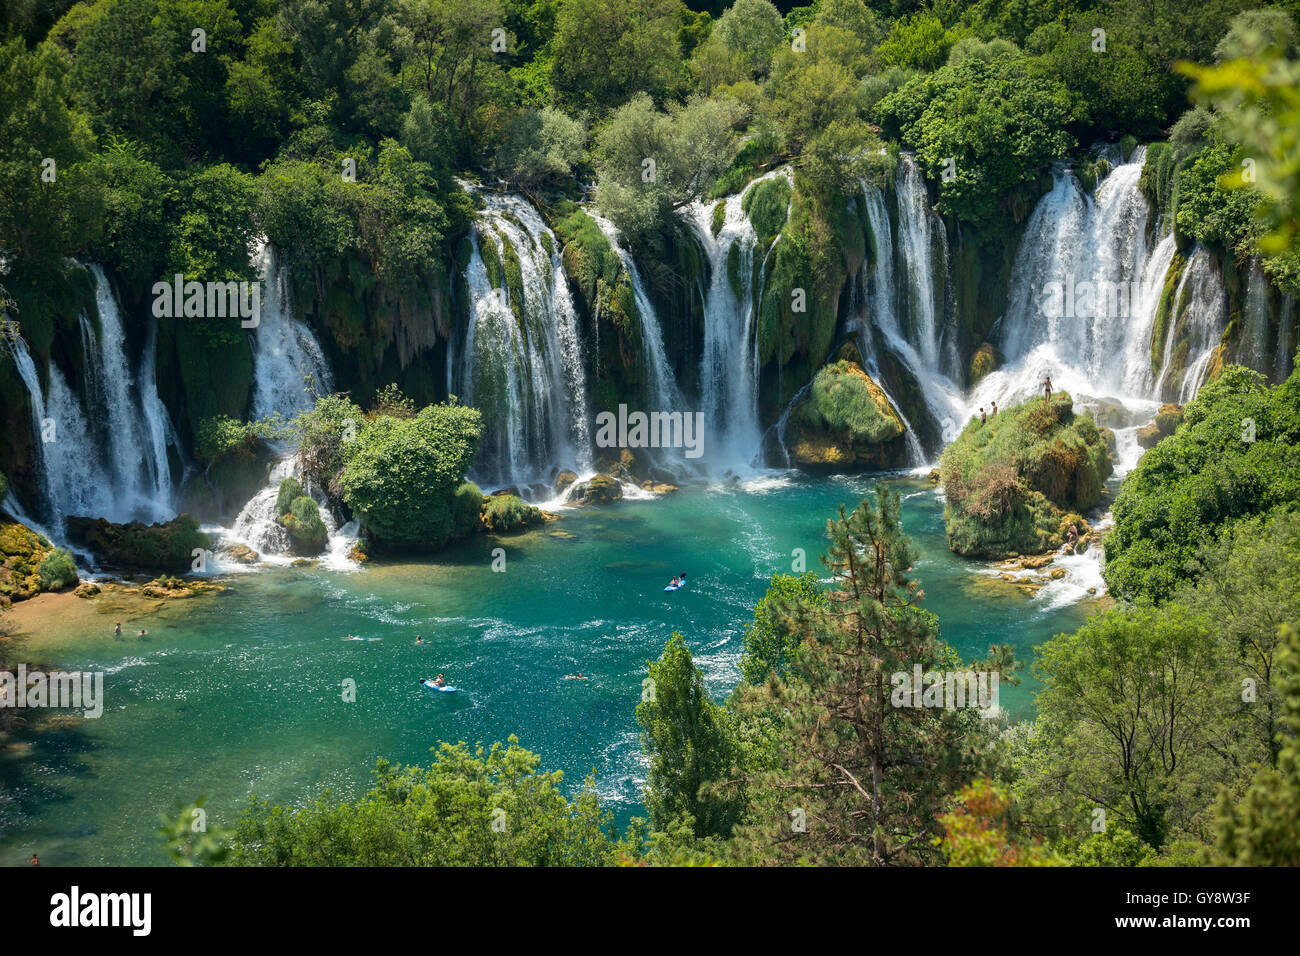 The Trebižat river and spectacular Kravice waterfalls in the vicinity of Ljubuški (West Herzegovina, Bosnia and Herzegovina). Stock Photo